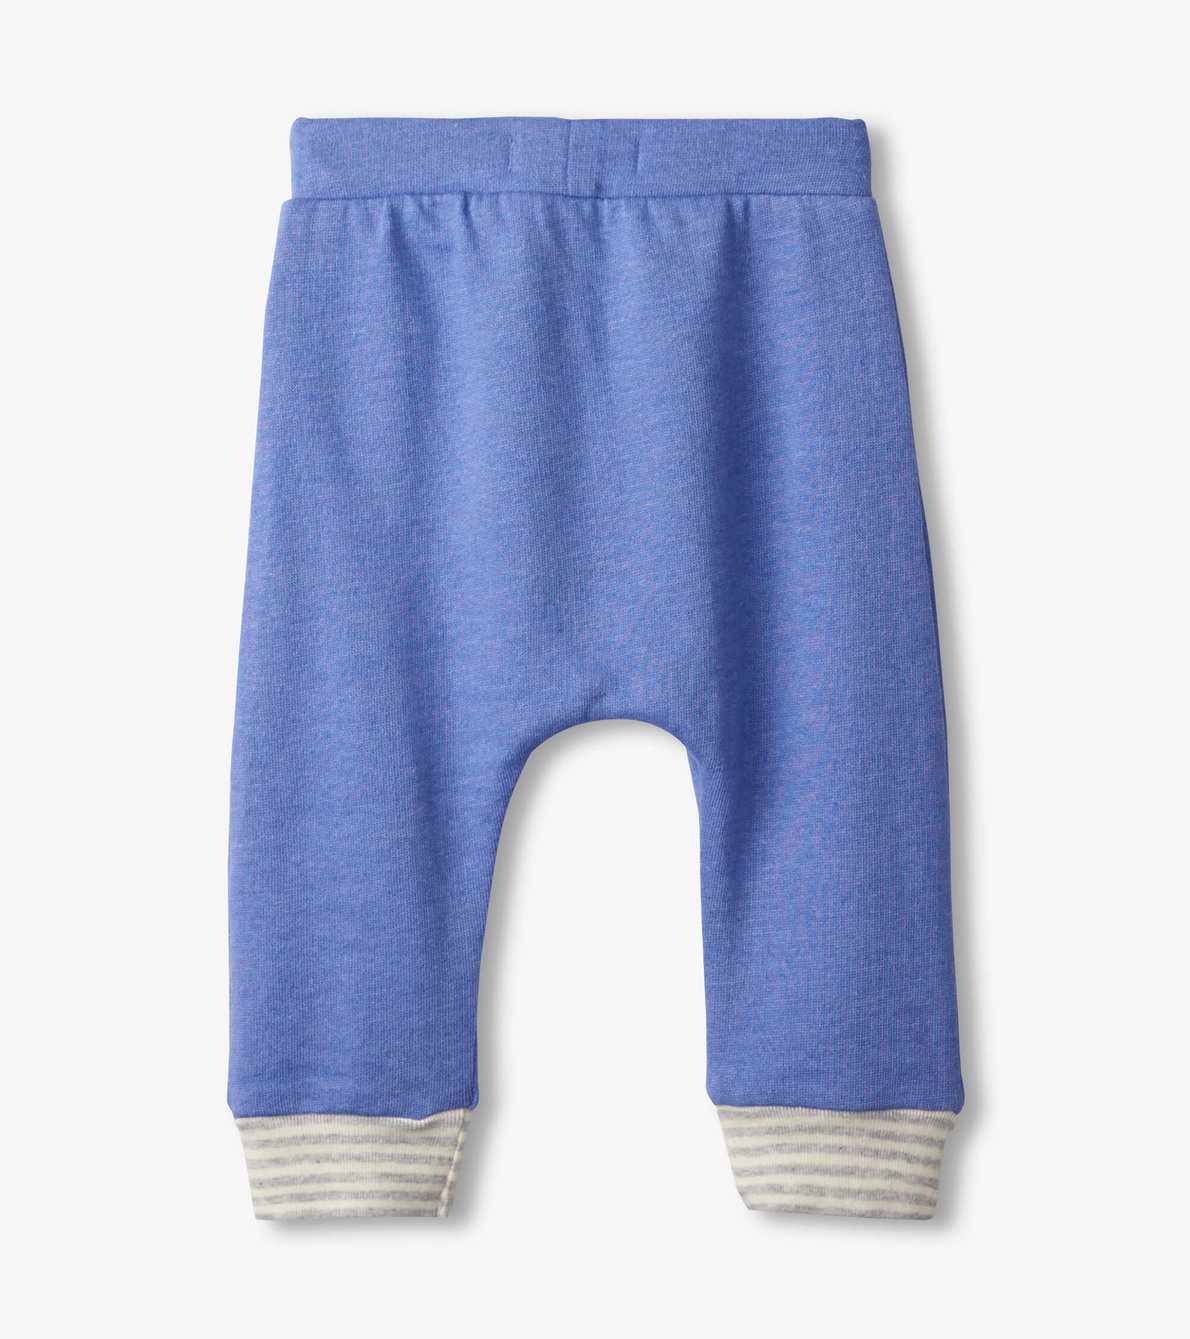 View larger image of Blue Melange Baby Kanga Pants